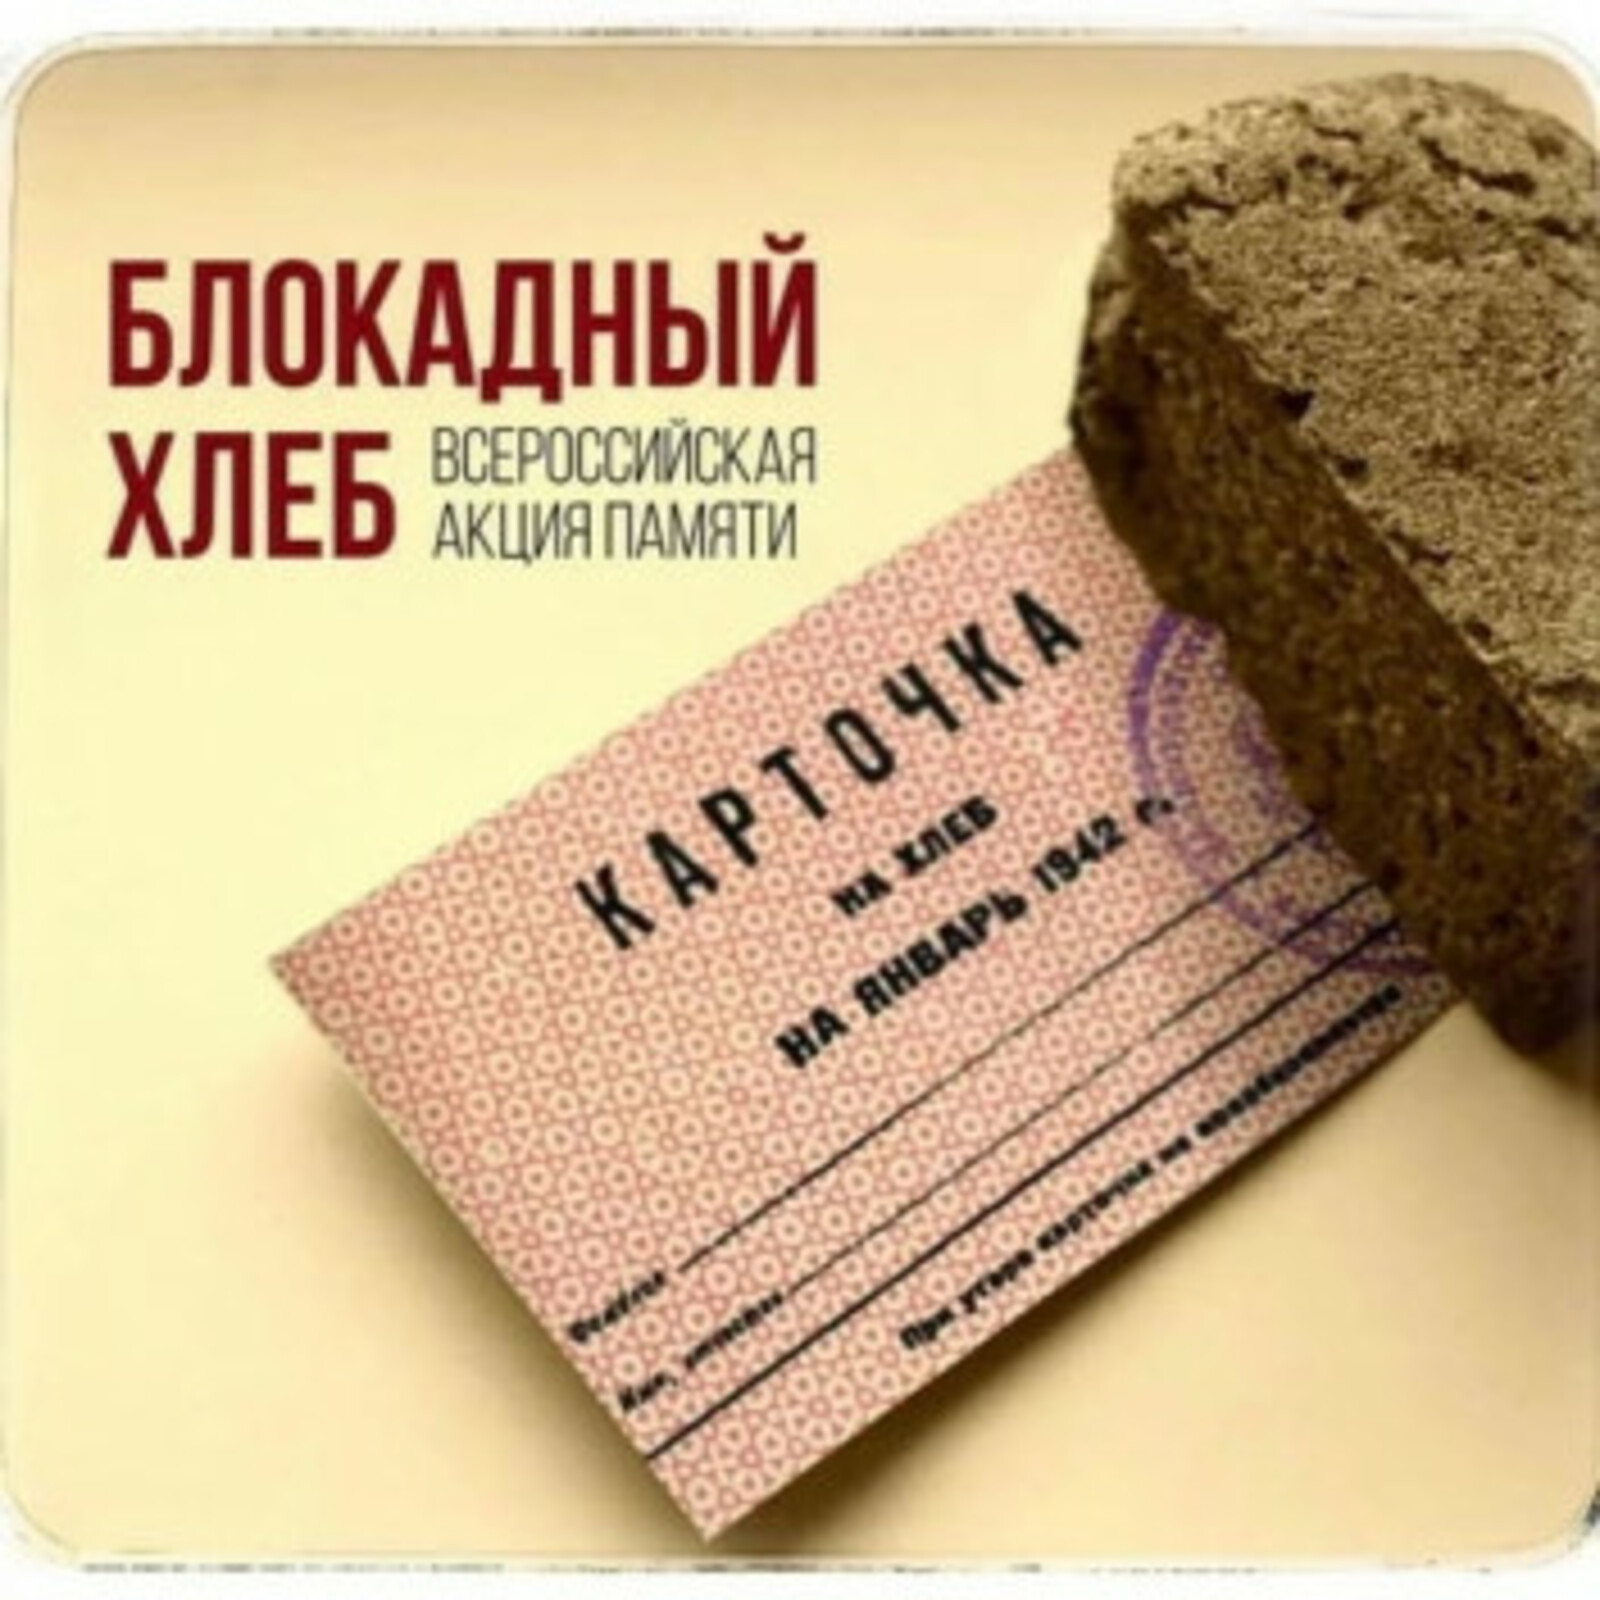 В Башкортостане проводится акция "Блокадный хлеб"